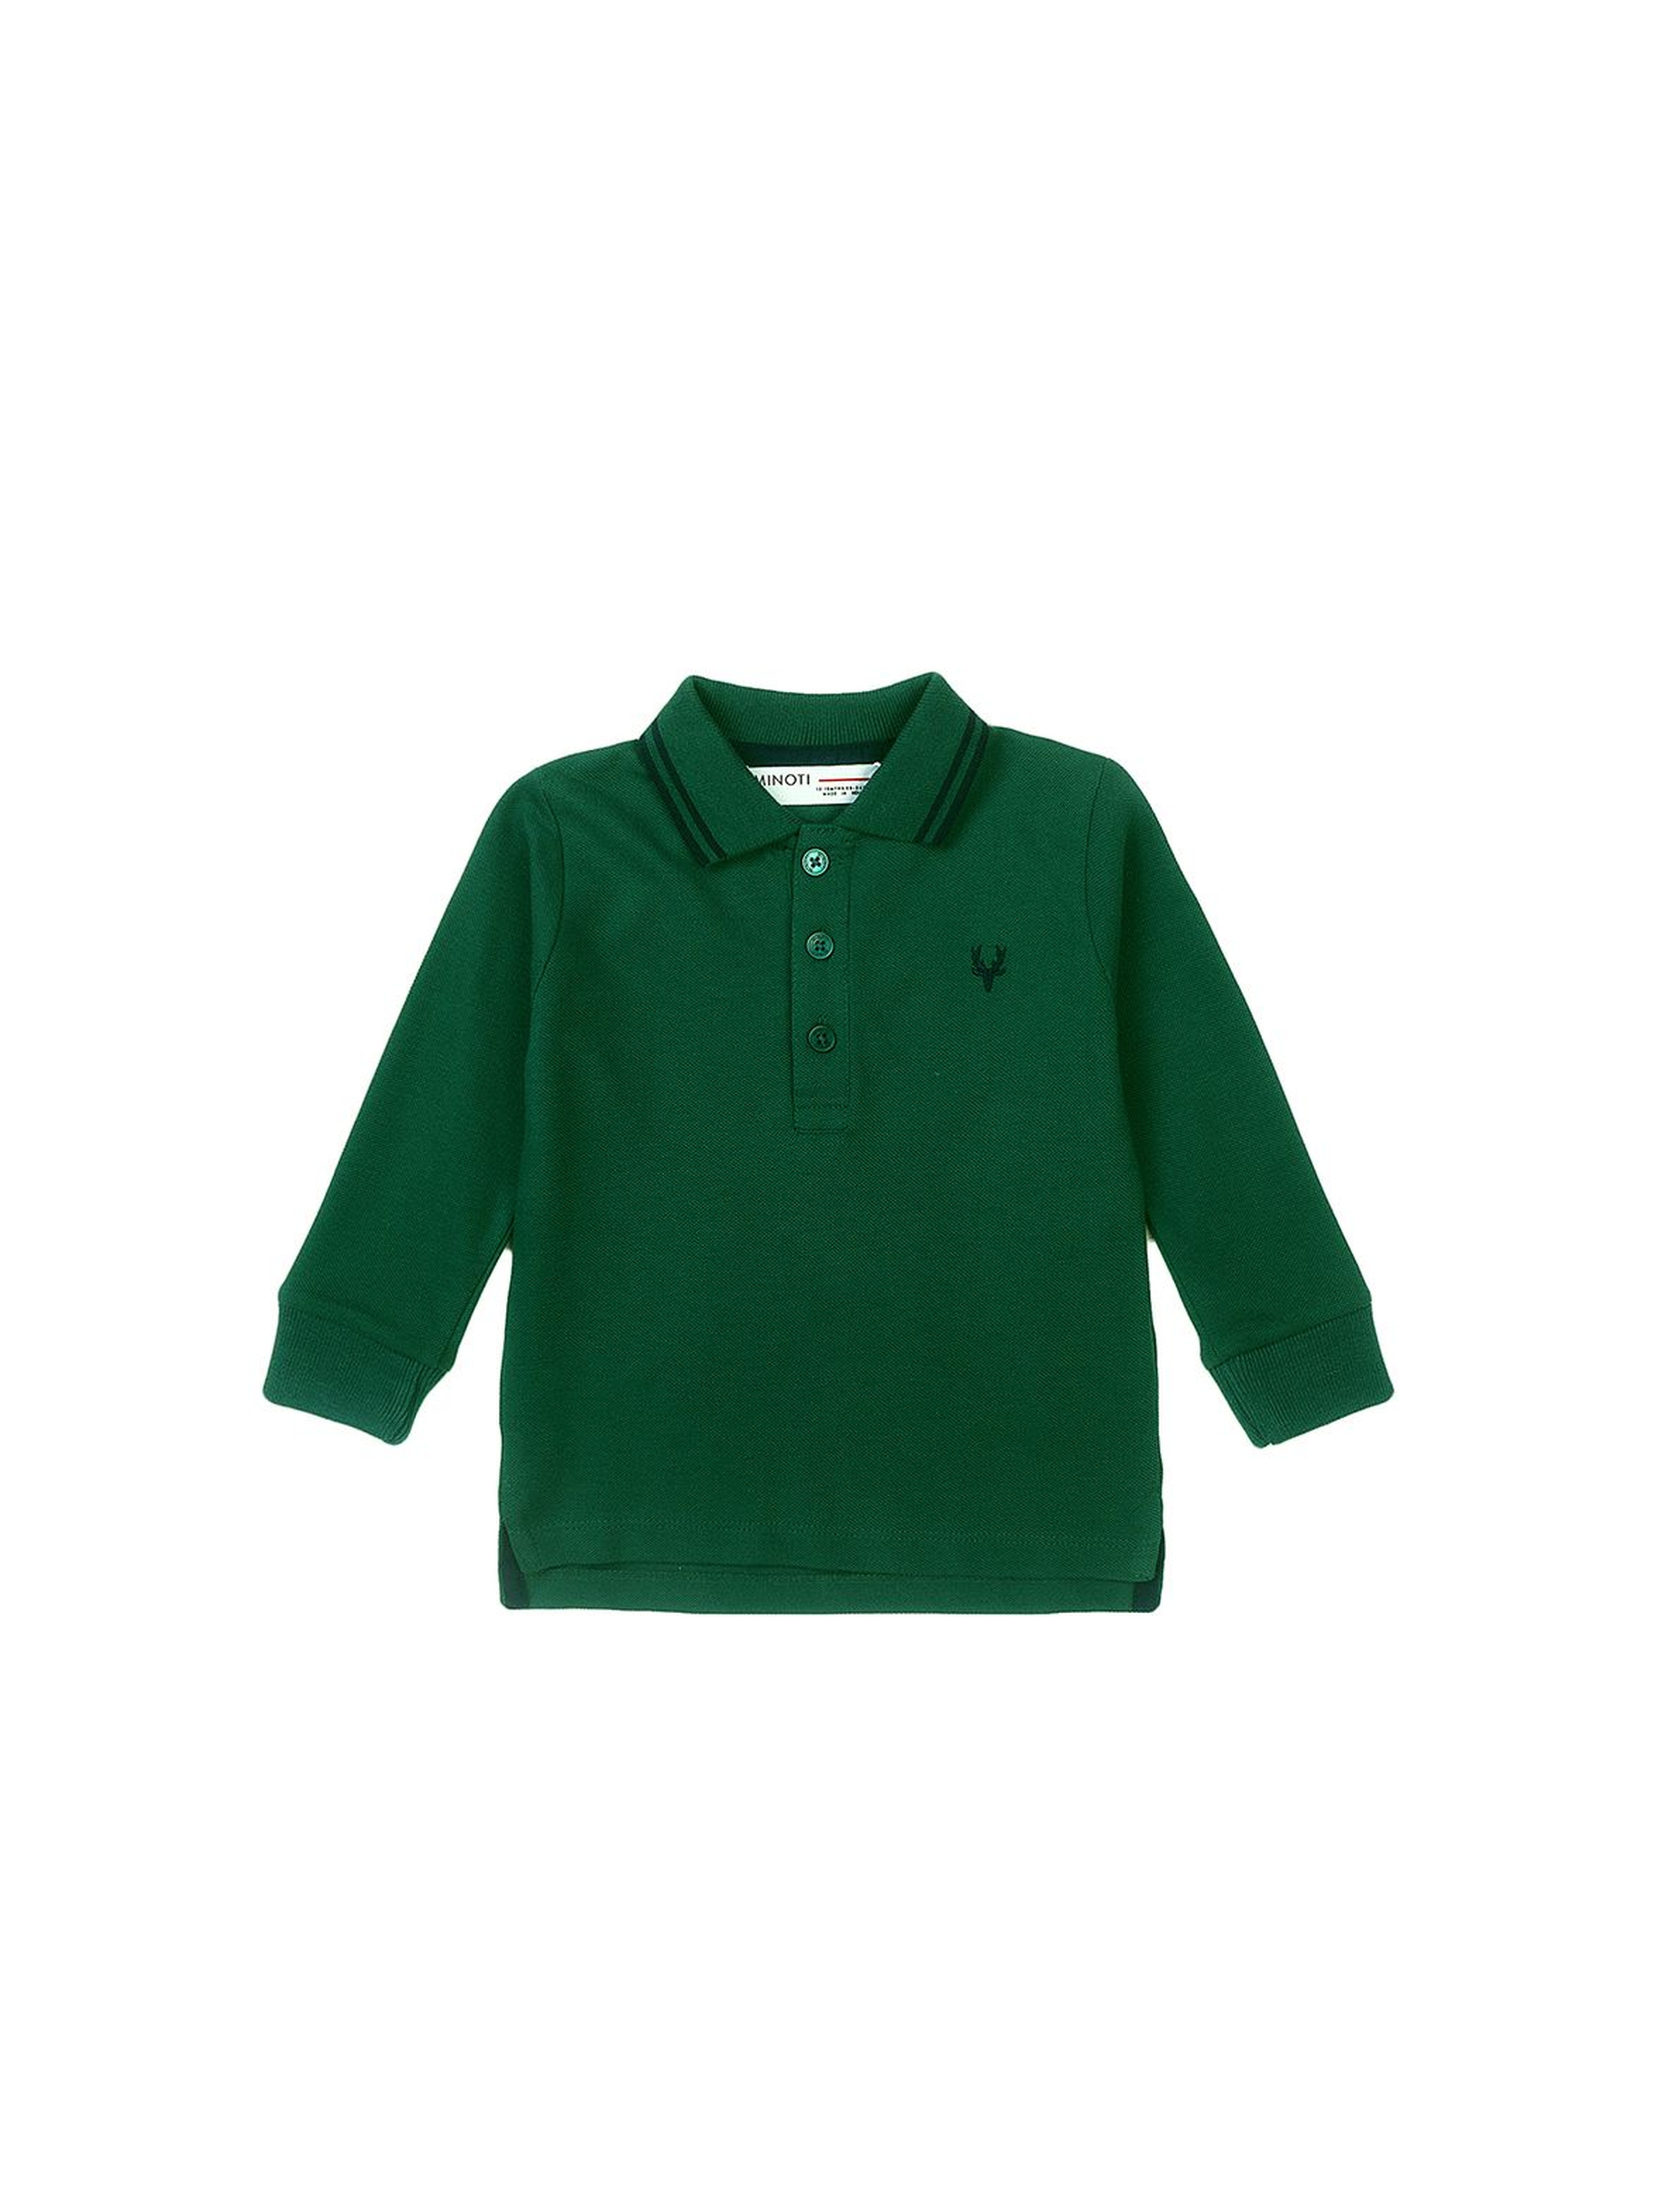 Bluzka chłopięca bawełniana z kołnierzykiem - zielona